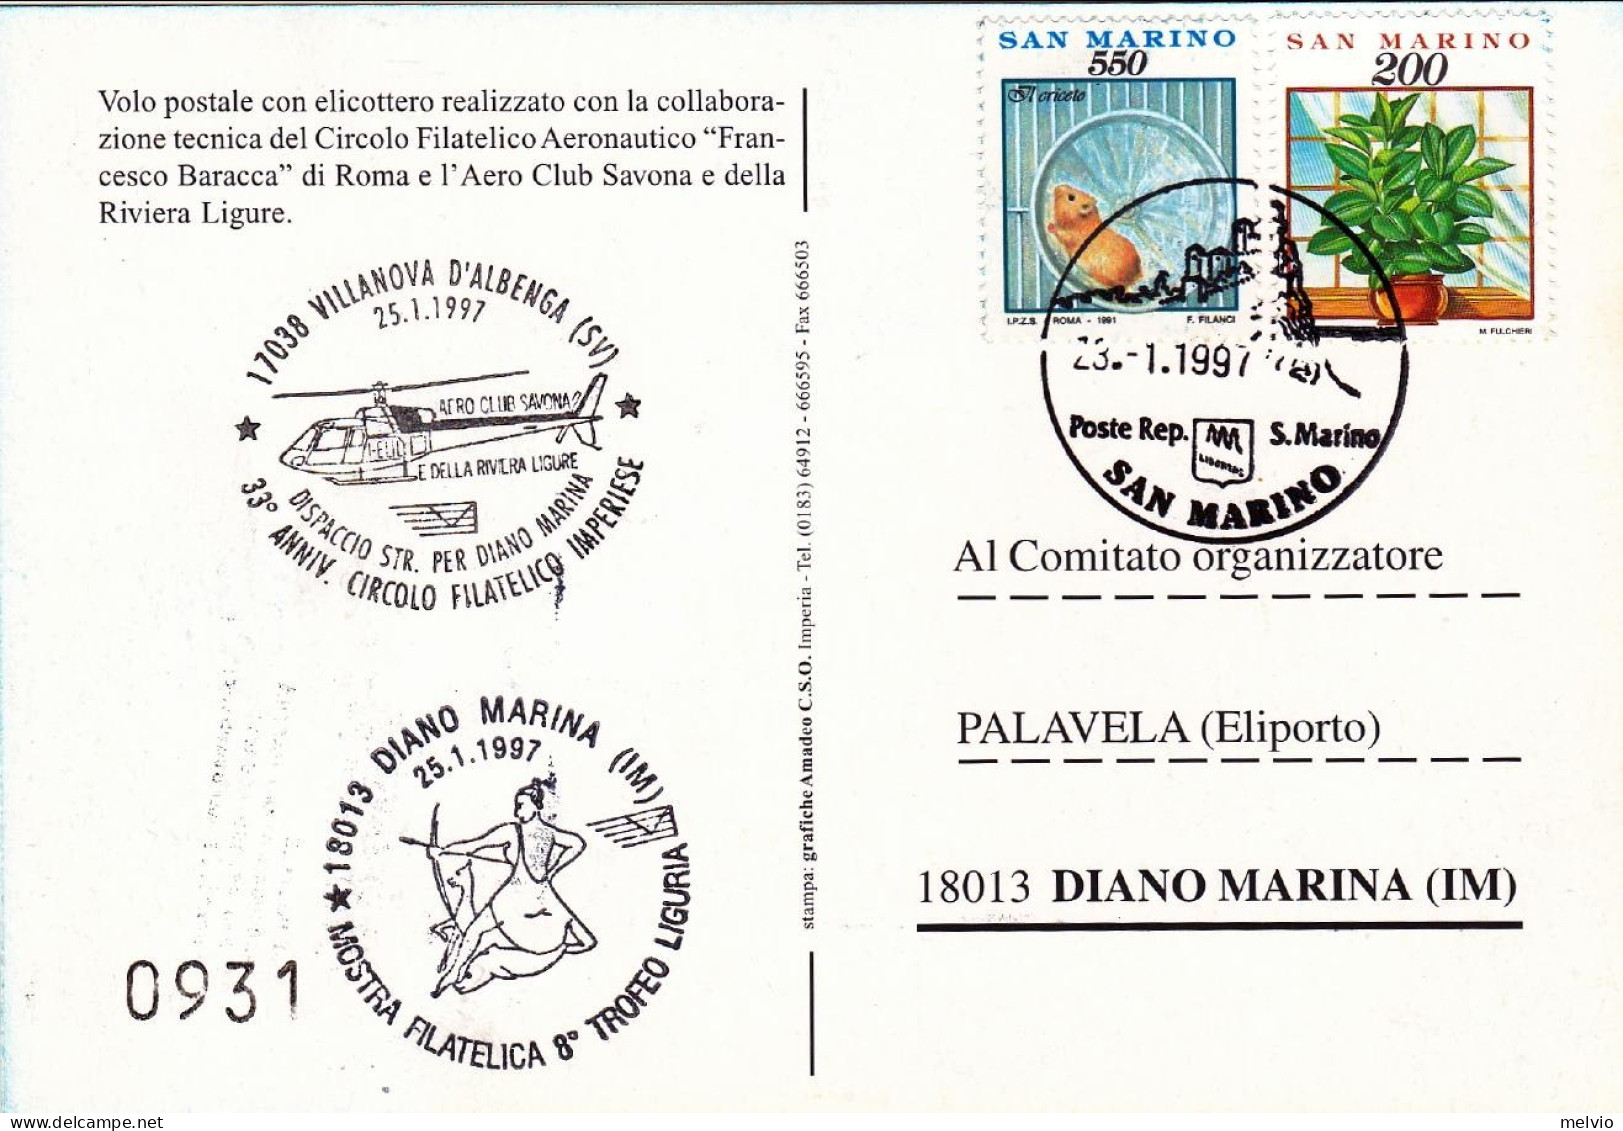 San Marino-1997 Cartolina Numerata Volo Postale Con Elicottero Villanova D'Alben - Luchtpost